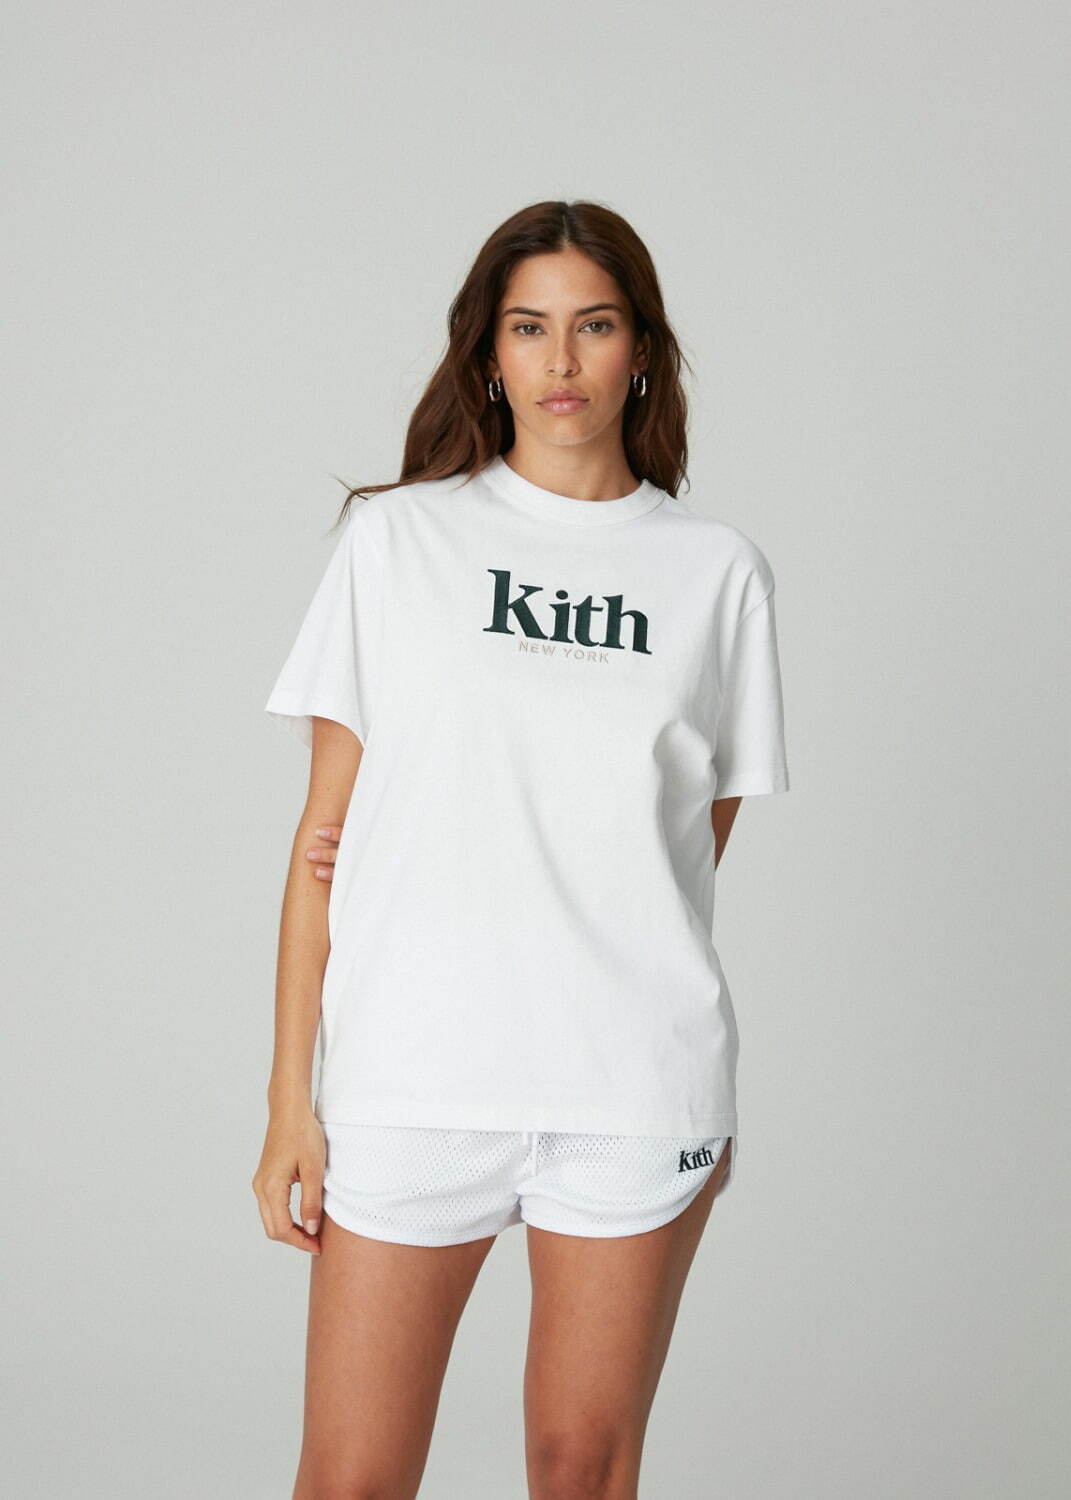 キス(Kith) 2021年夏ウィメンズコレクション ディテール - 写真119